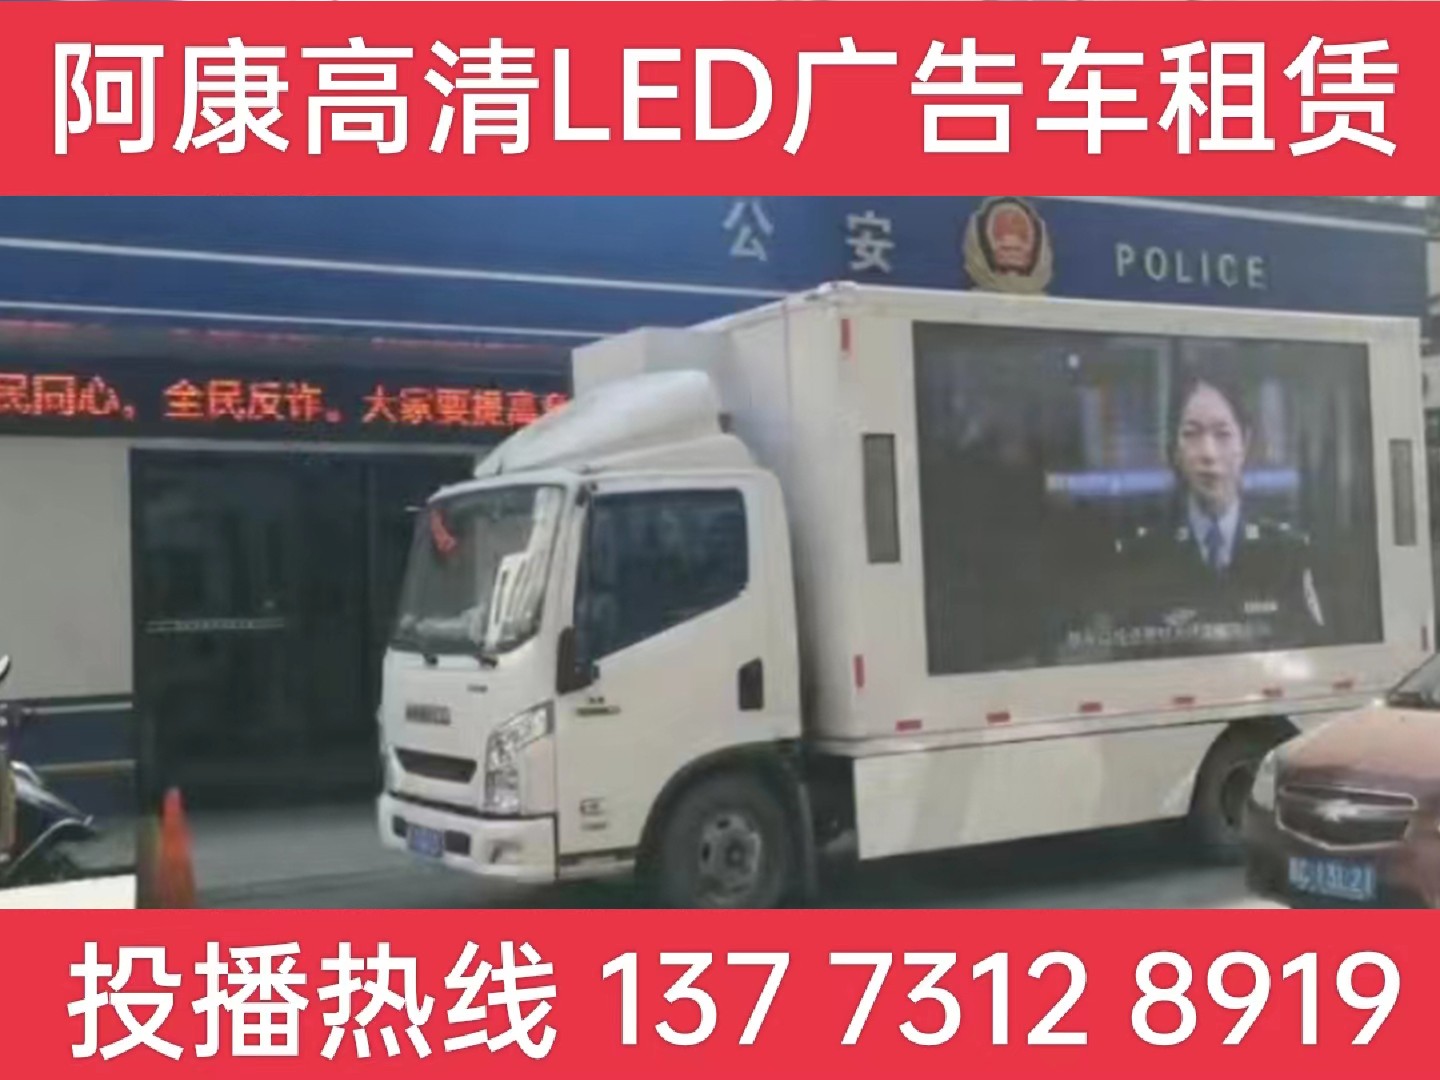 宜兴LED广告车租赁-反诈宣传